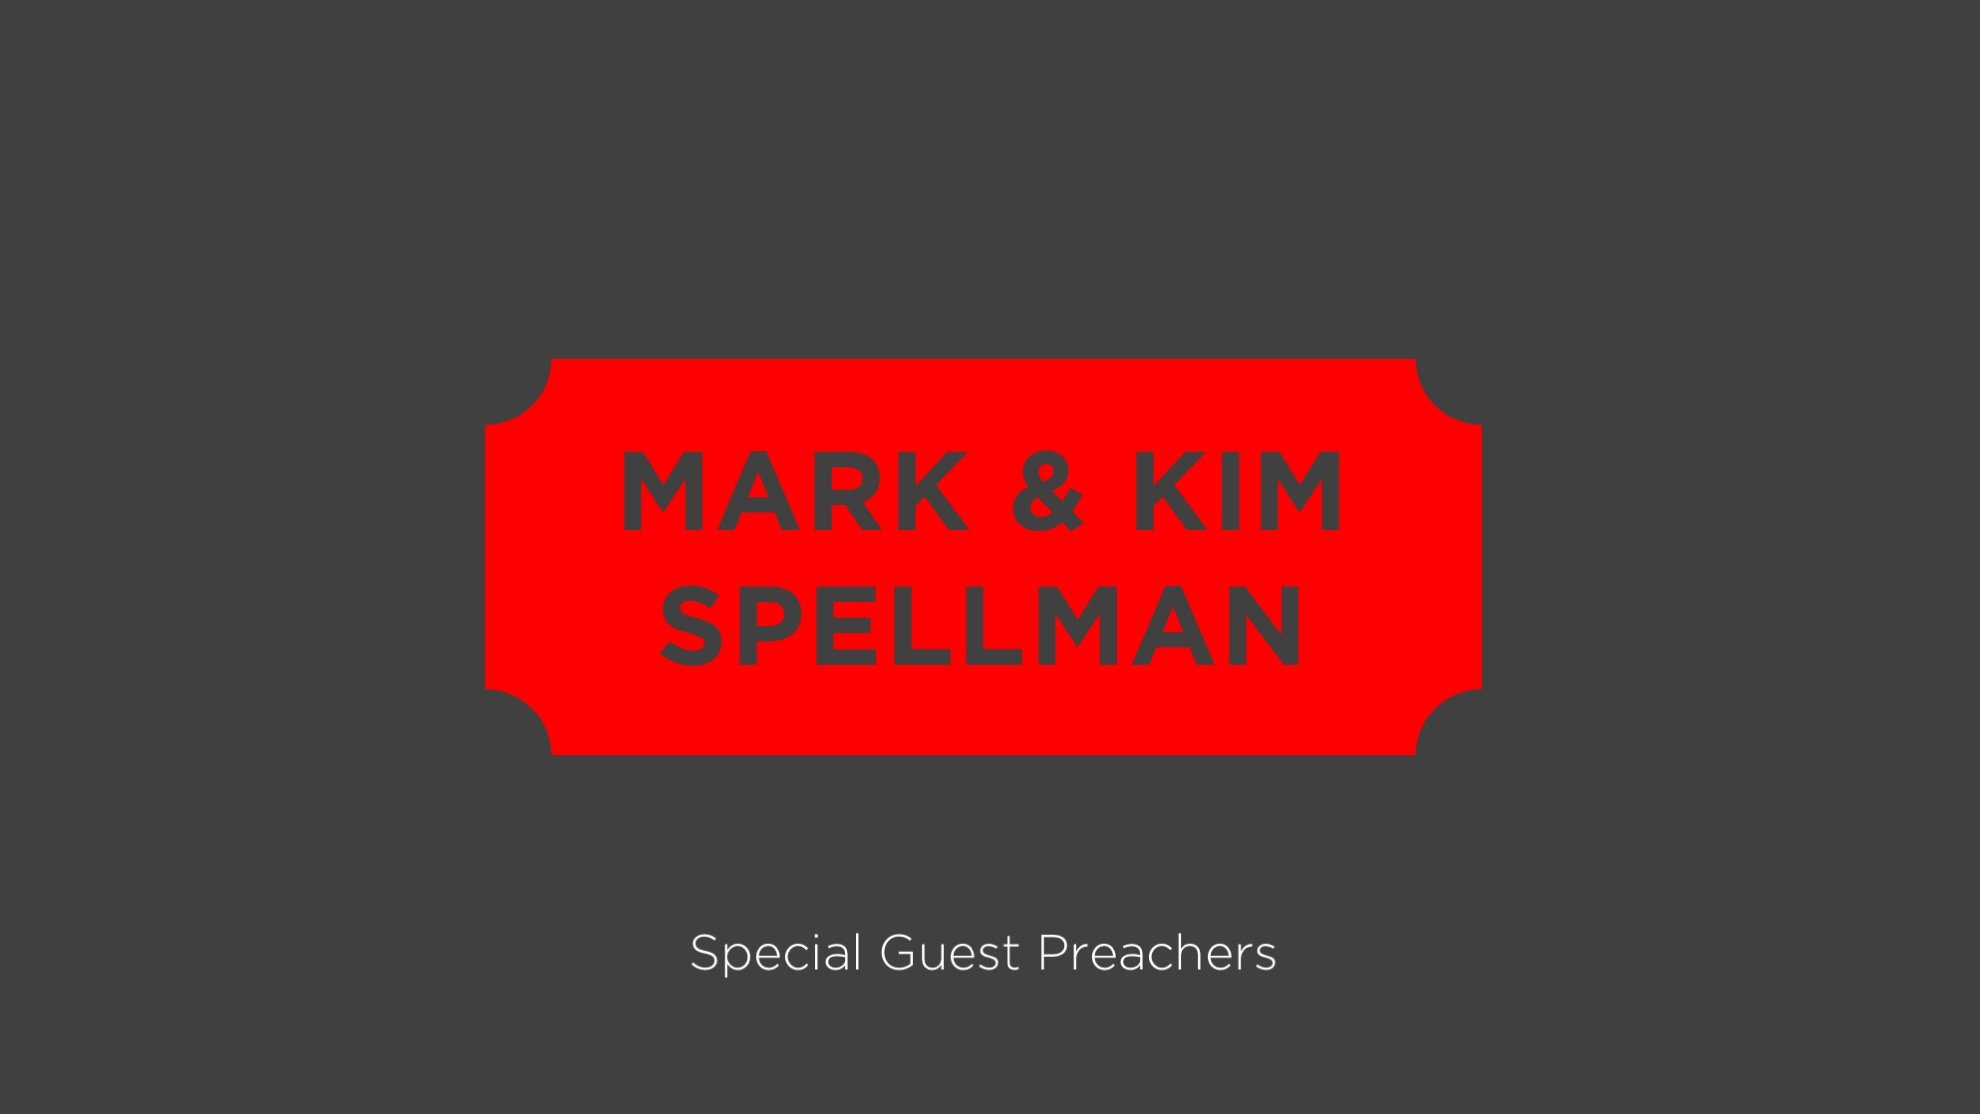 Mark & Kim Spellman 2017